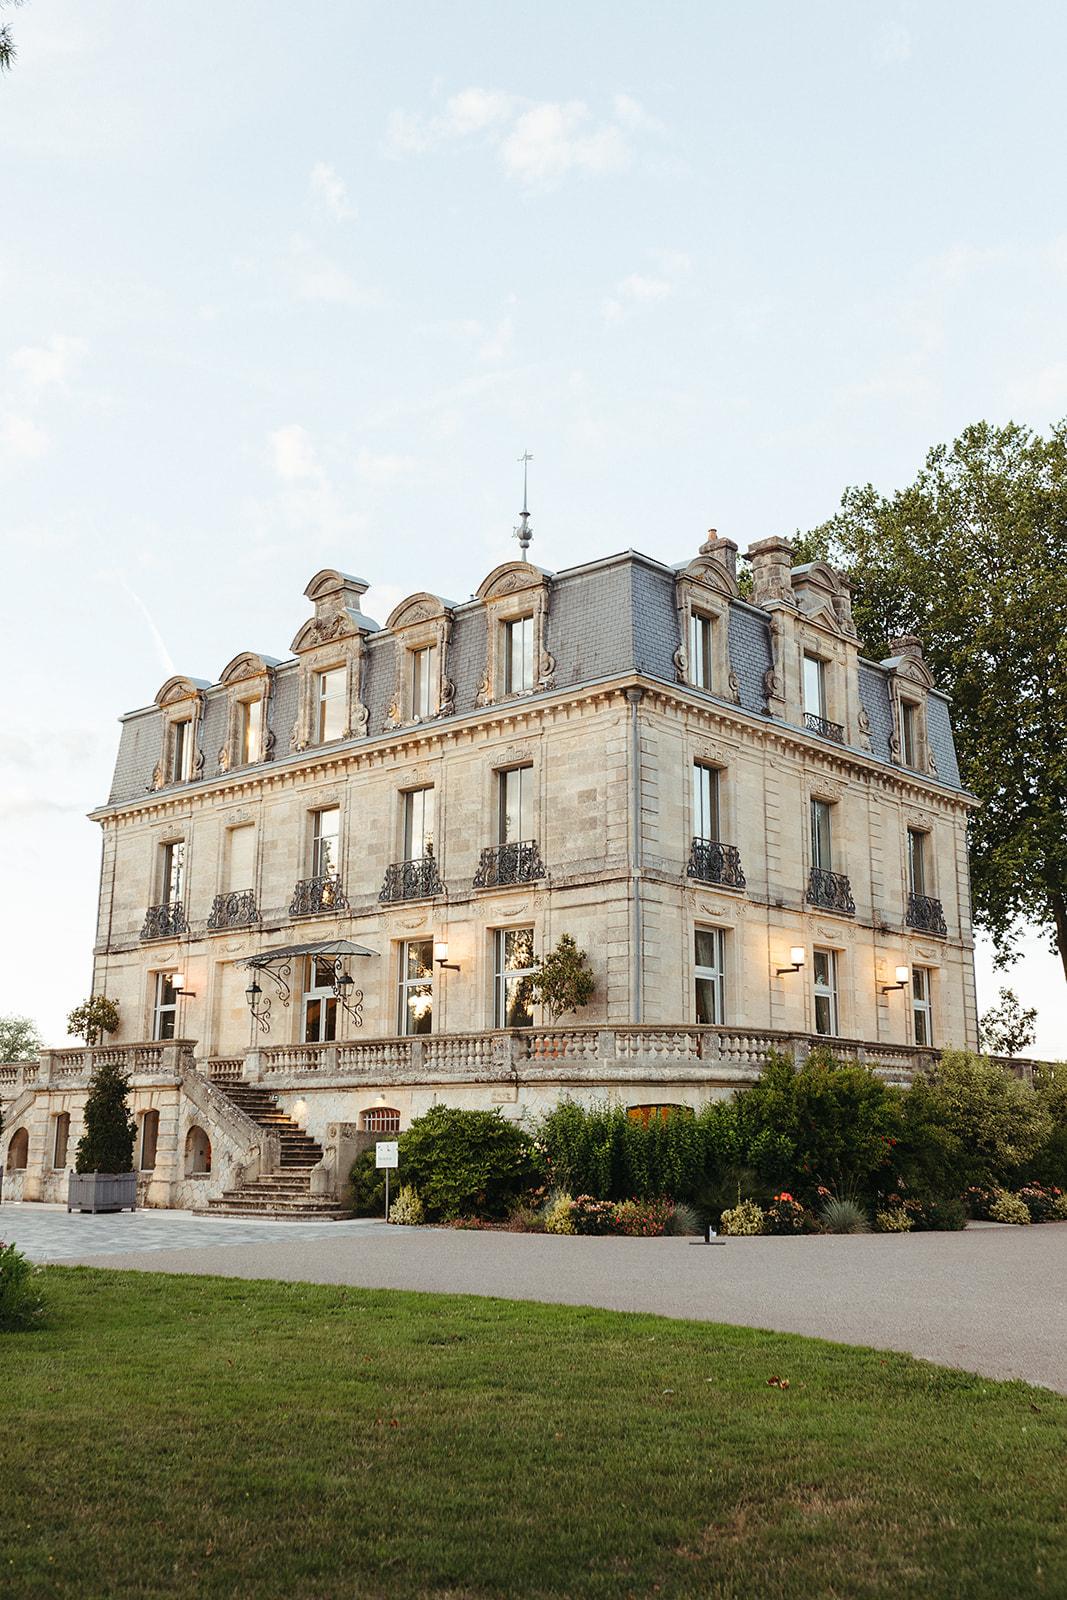 Mariage élégant au château Grattequina à Bordeaux - Eugénie + Hugo - Blog Mariage Madame C